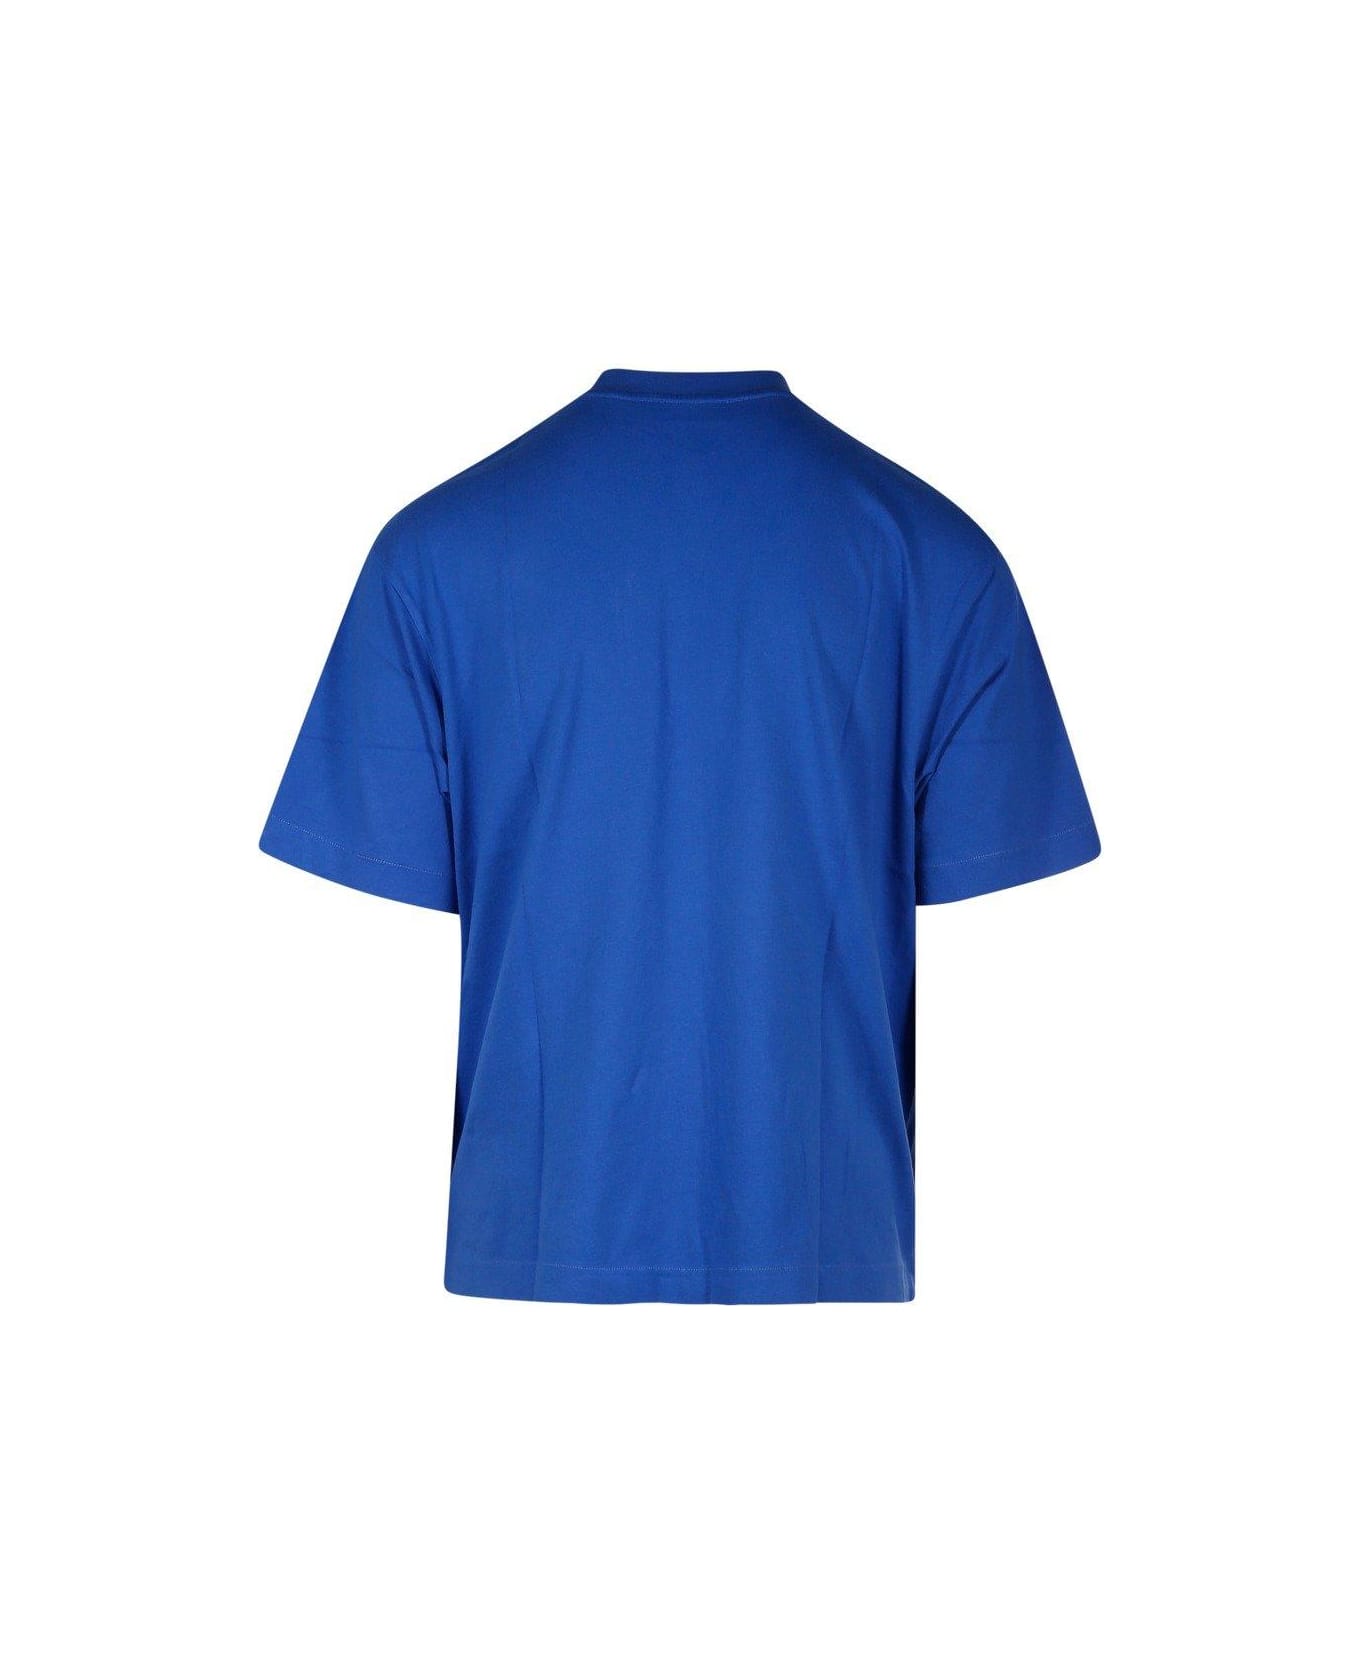 Off-White Ow 23 Skate T-shirt - Blue